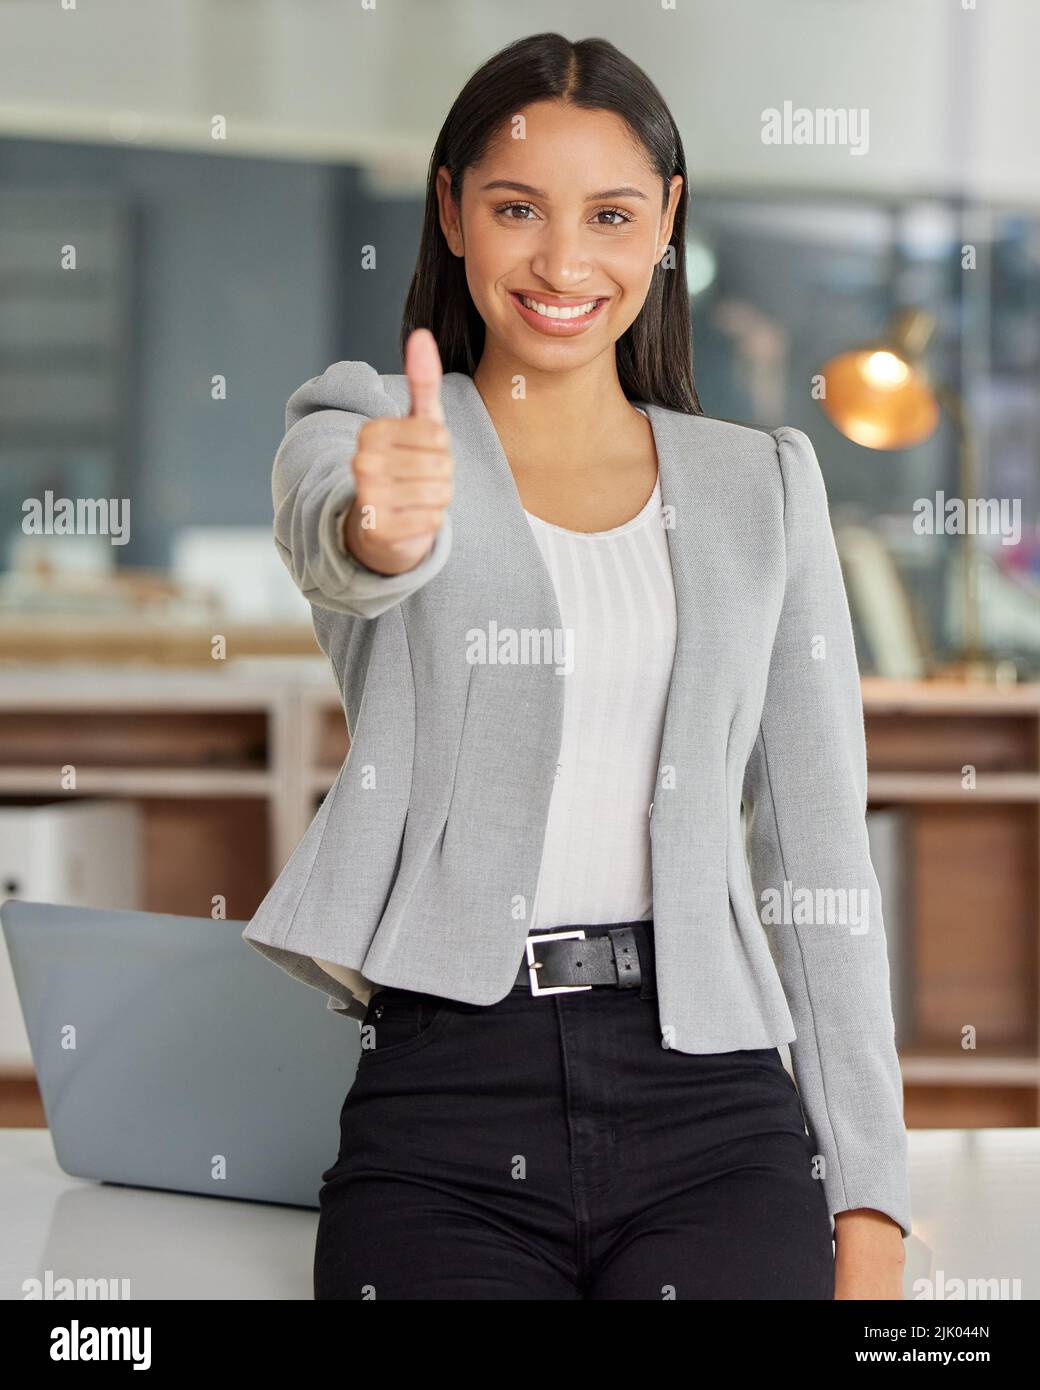 Credo in voi e anche voi dovreste. Ritratto di una giovane donna d'affari che mostra i pollici in un ufficio moderno. Foto Stock